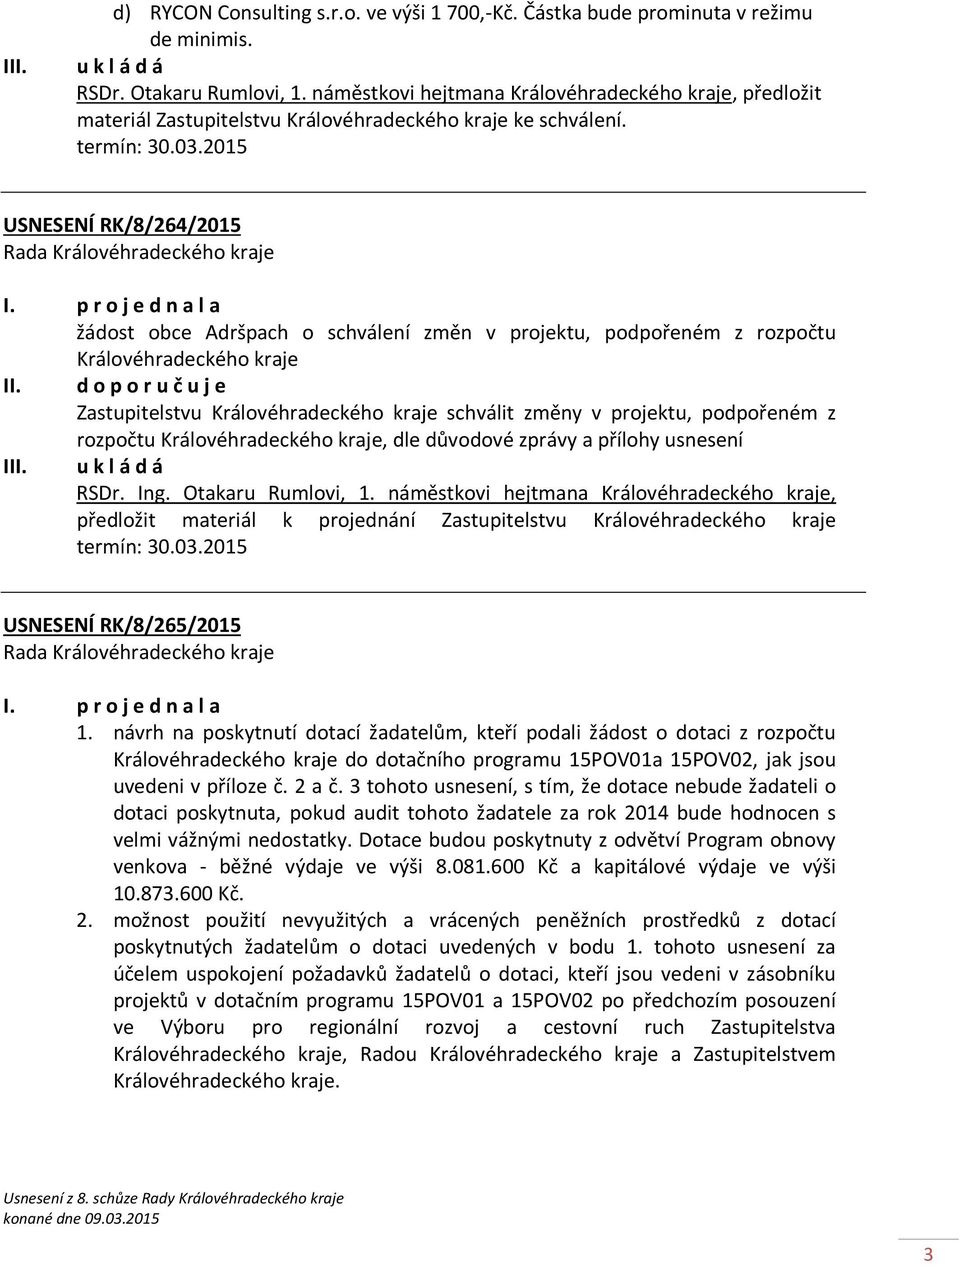 USNESENÍ RK/8/264/2015 žádost obce Adršpach o schválení změn v projektu, podpořeném z rozpočtu Královéhradeckého kraje II.